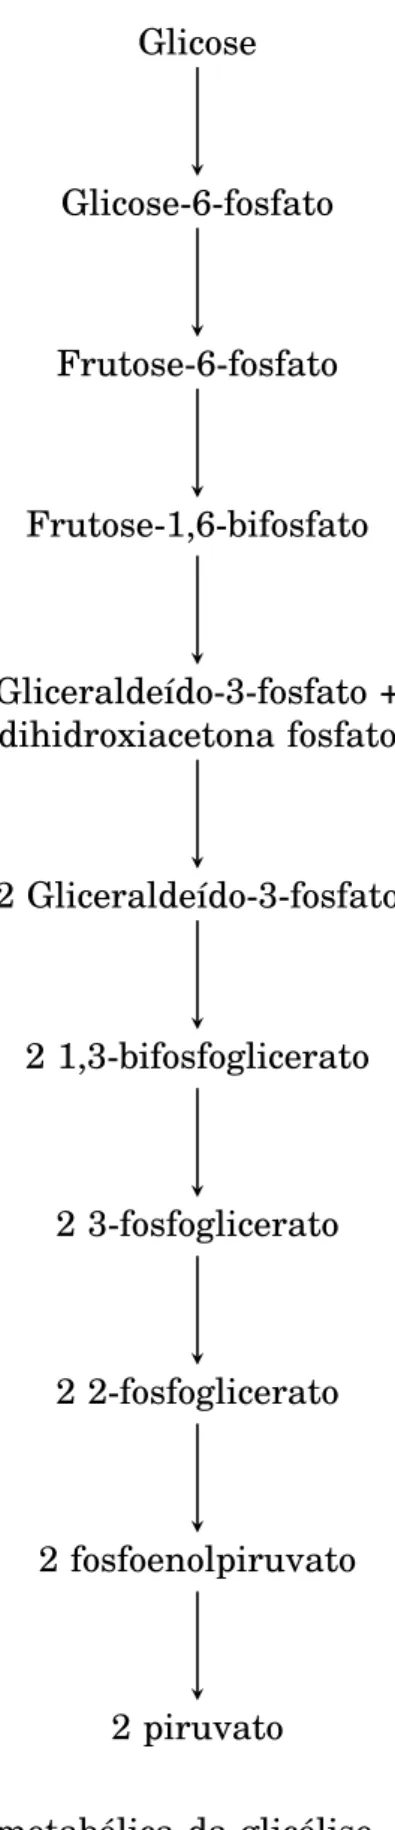 Figura 2.1: Exemplo de via metabólica da glicólise, mostrando de forma simplifi- simplifi-cada as reações envolvidas.